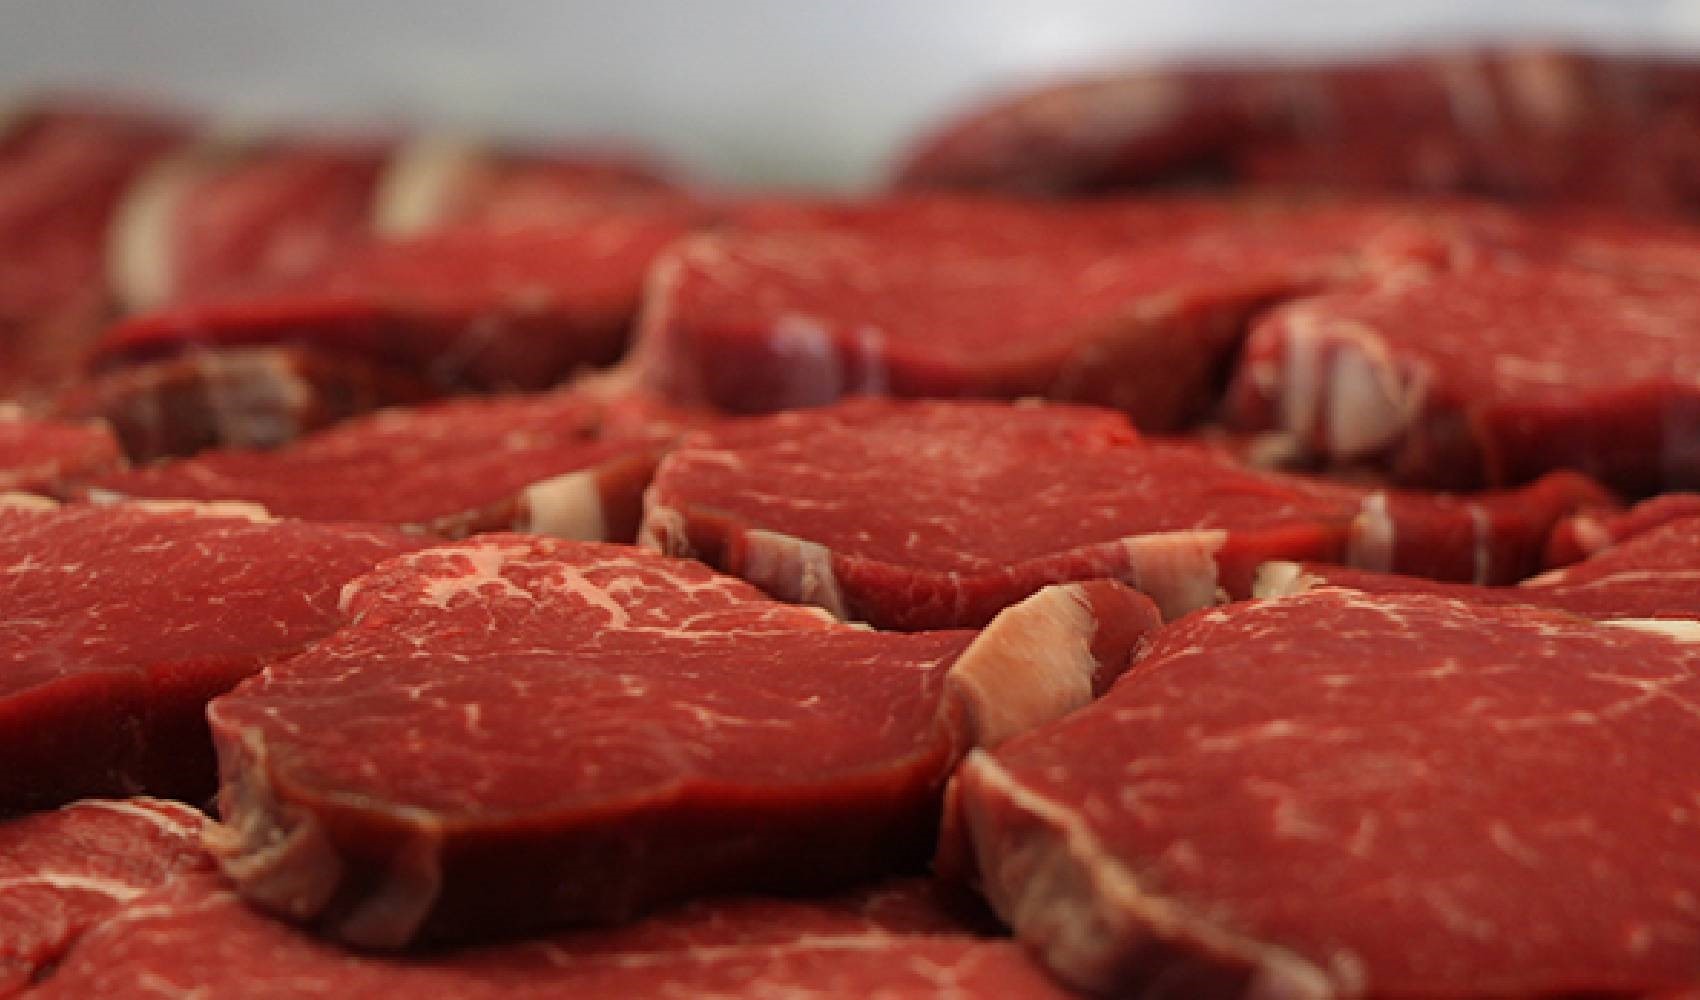 Eti sağlıklı tüketmek için 'Kızartmayın, kavurmayın' uyarısı